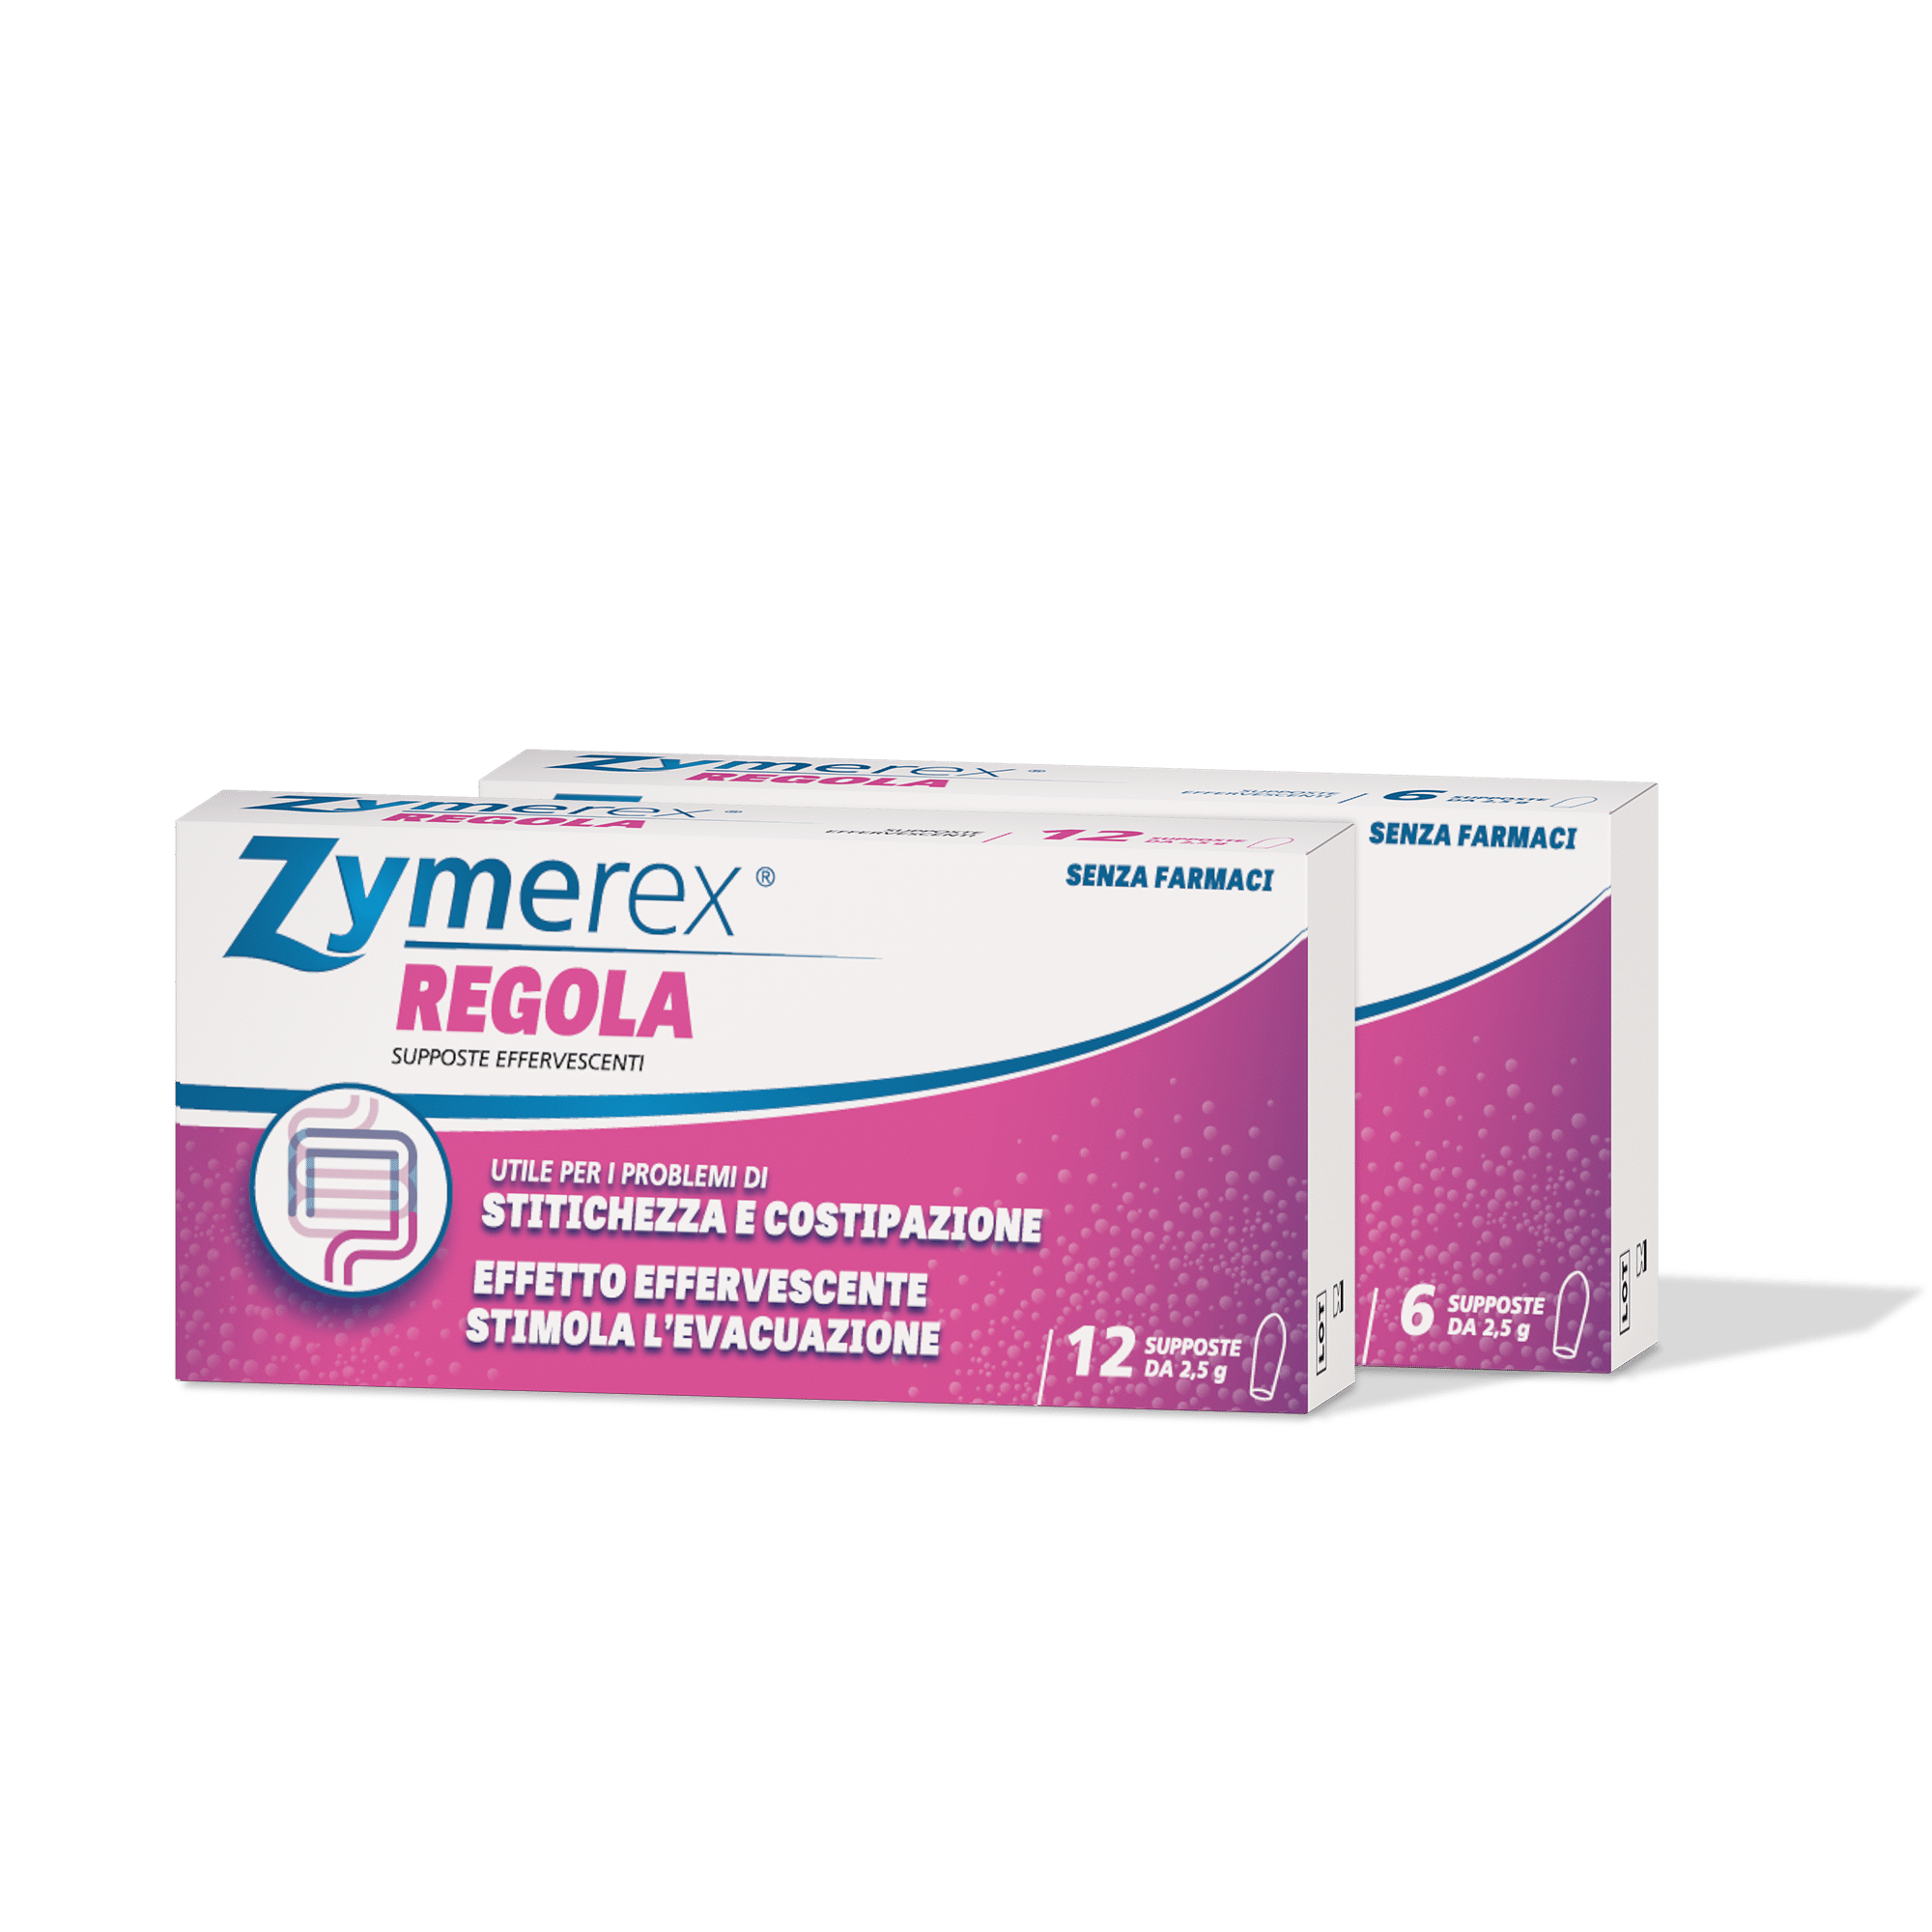 zymerex regola supposte effervescenti confezione